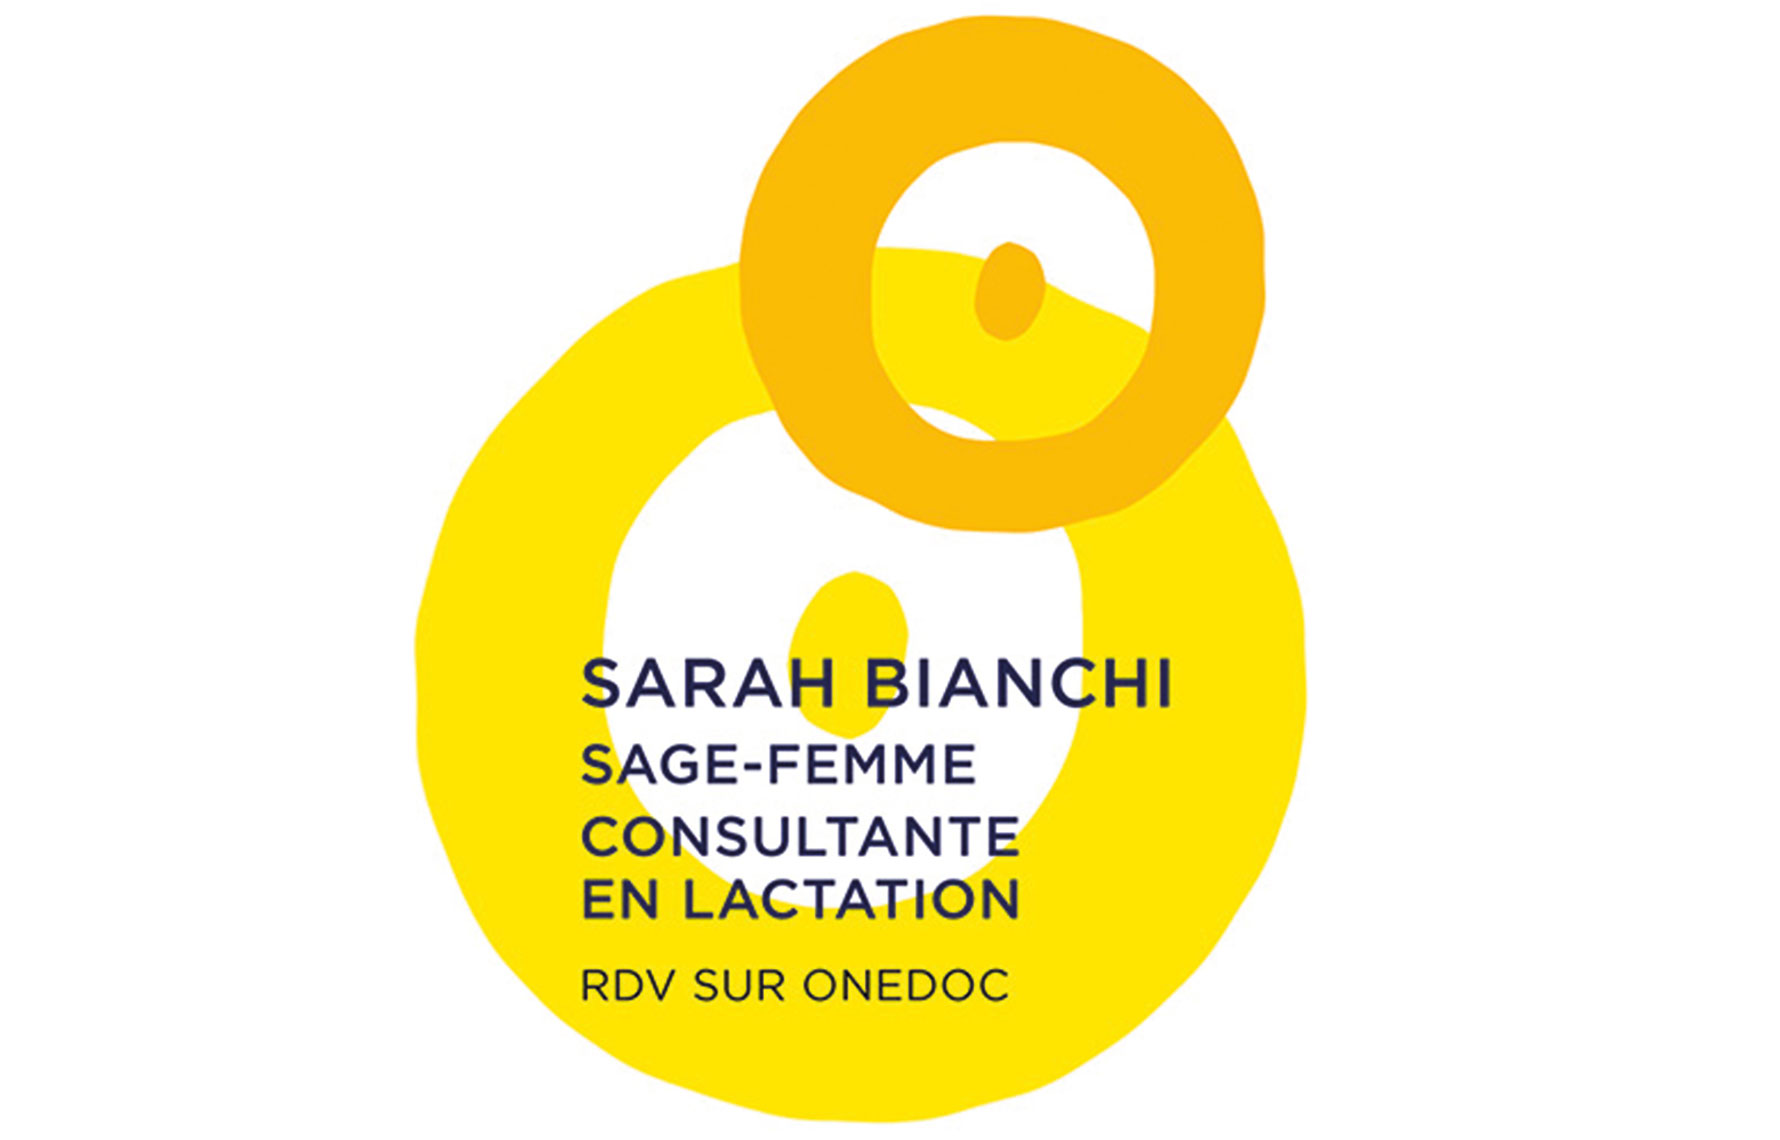 Sarah Bianchi Sage-femme consultation en lactation